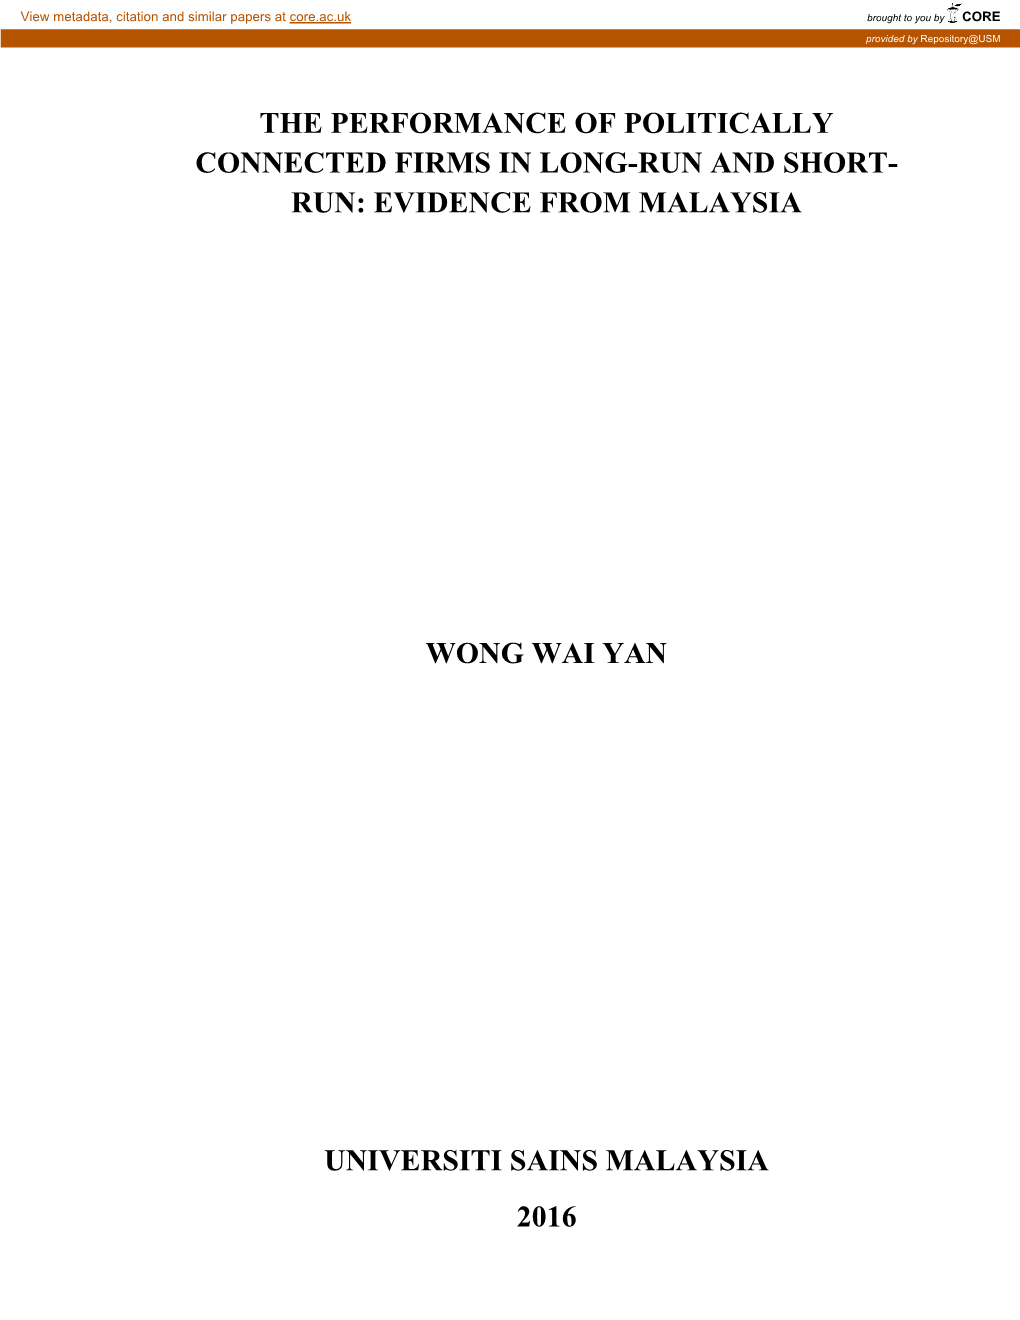 Evidence from Malaysia Wong Wai Yan Universiti Sains